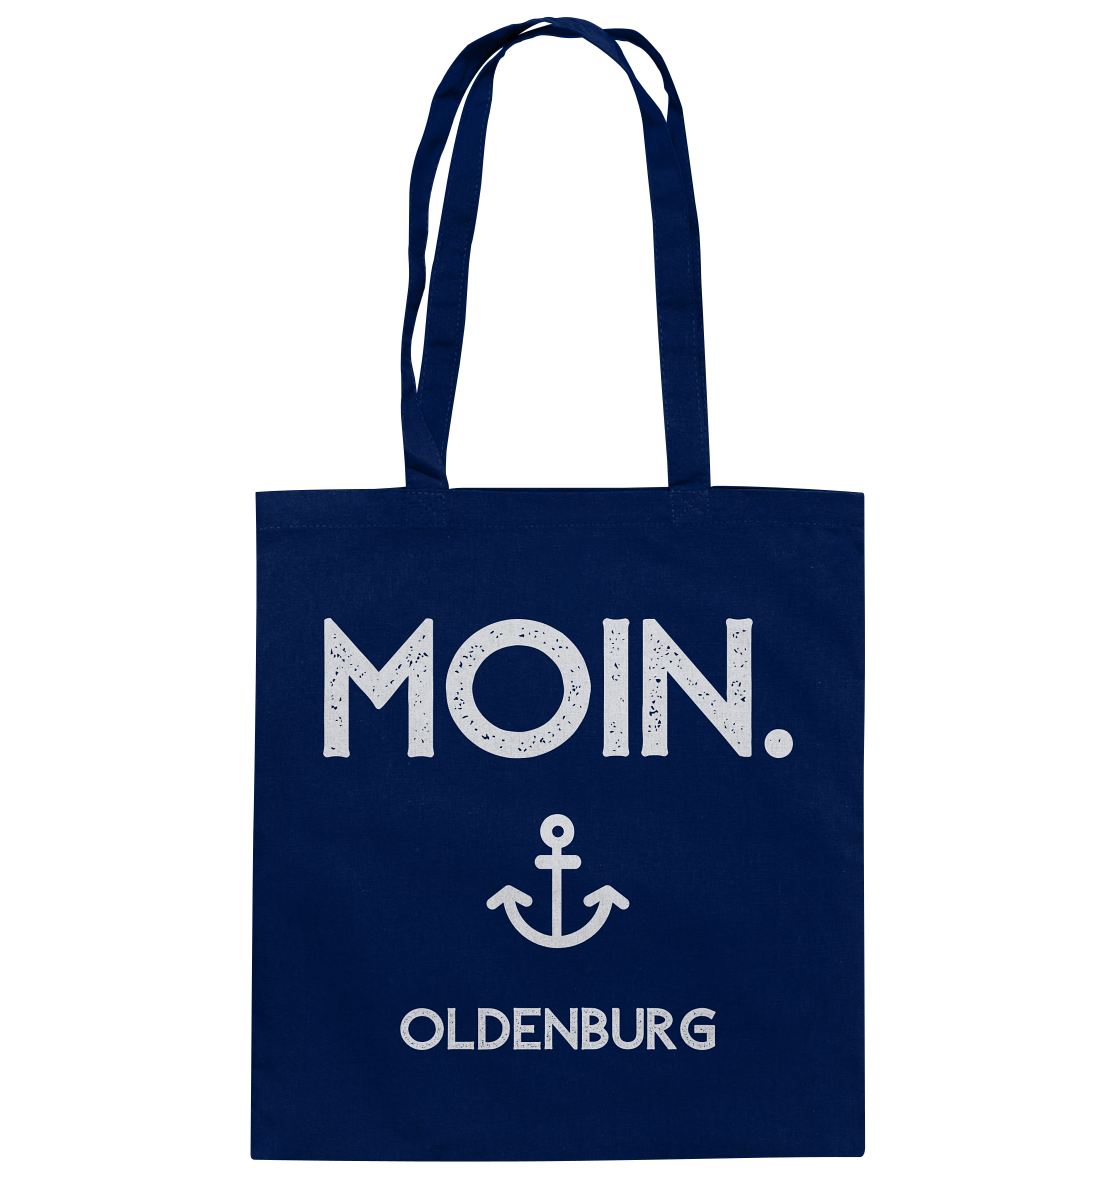 MOIN. Oldenburg - Baumwolltasche